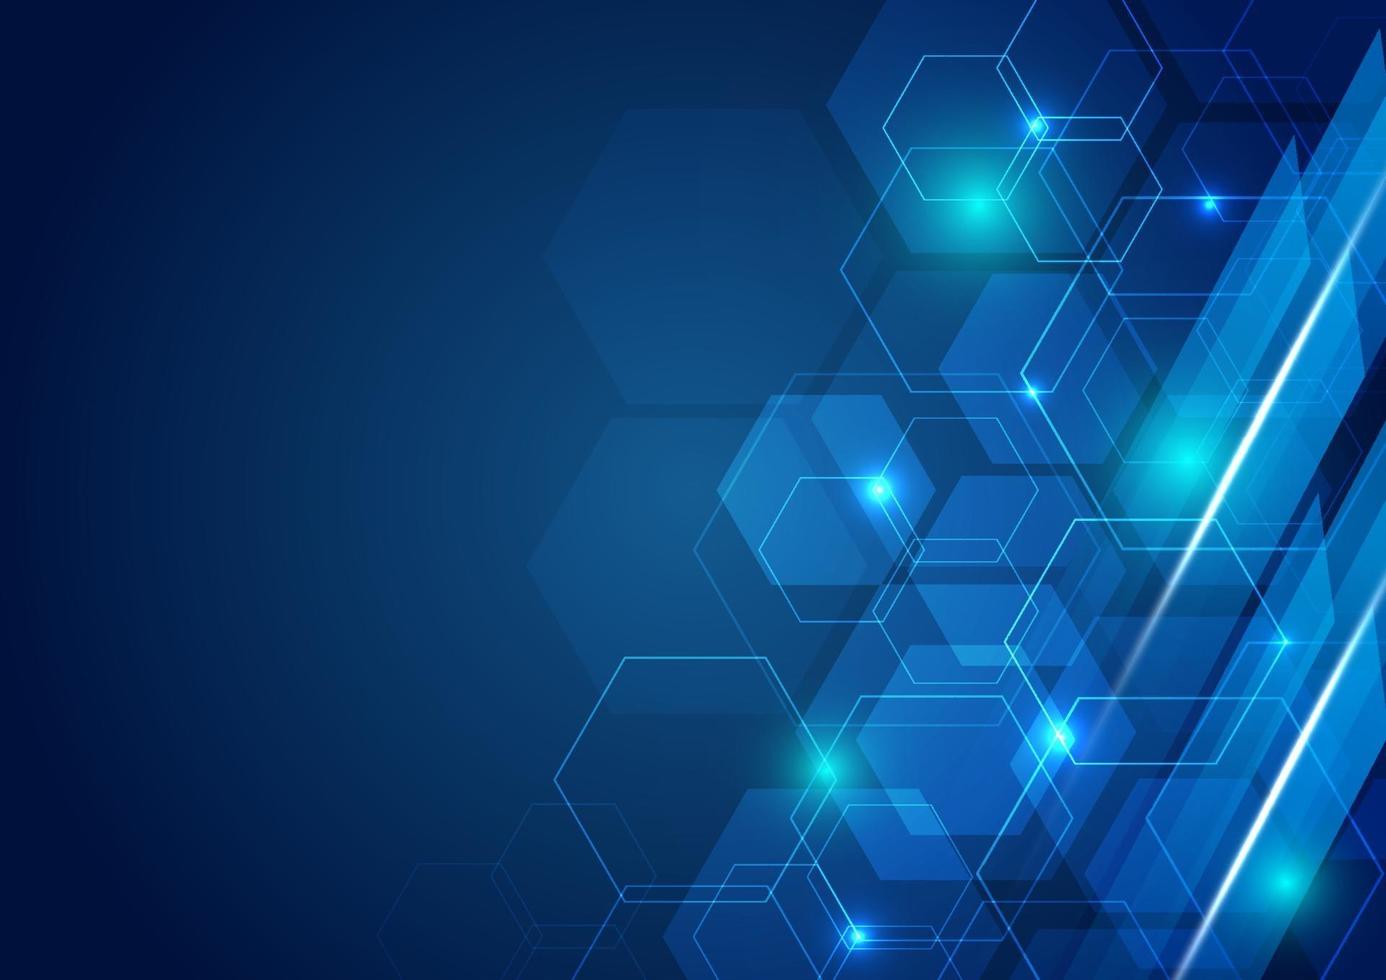 abstrakt teknik futuristisk hexagon överlappande mönster med blå ljuseffekt på mörkblå bakgrund. vektor